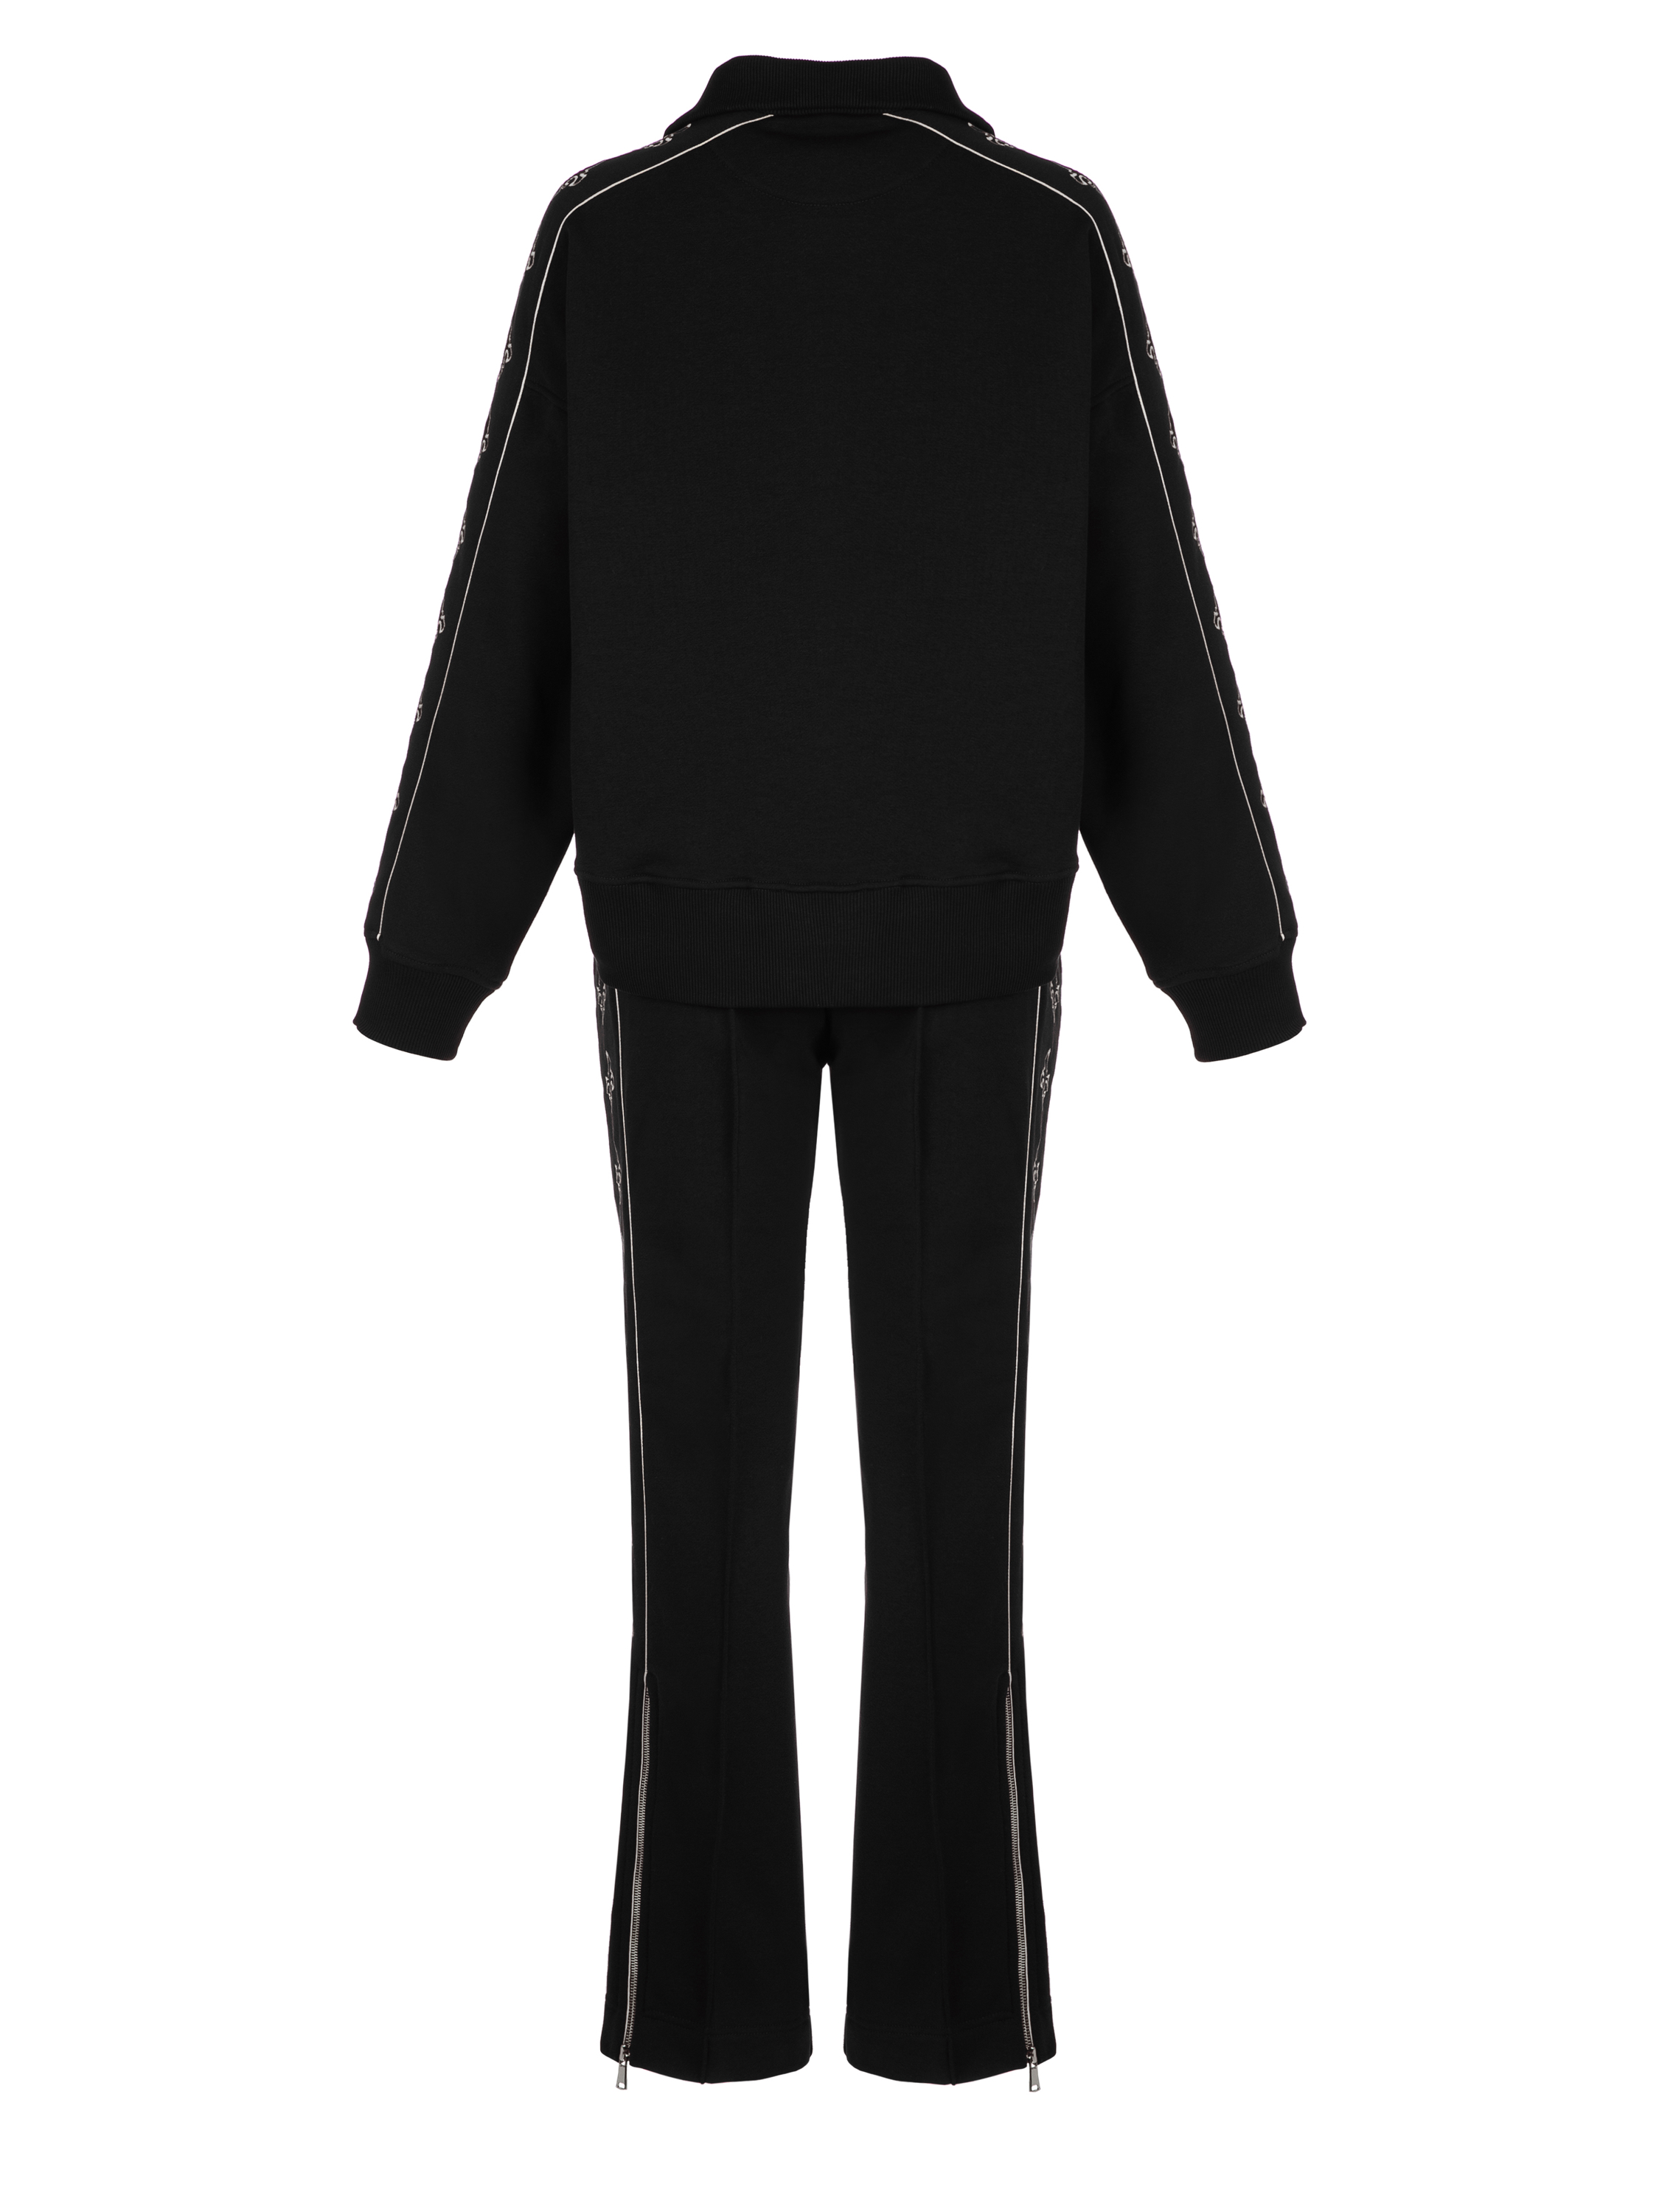 Черный костюм с укороченной толстовкой и белой вышивкой в виде лилий, артикул 1-10-158-9907/2ЛБ | Купить в интернет-магазине Yana в Москве